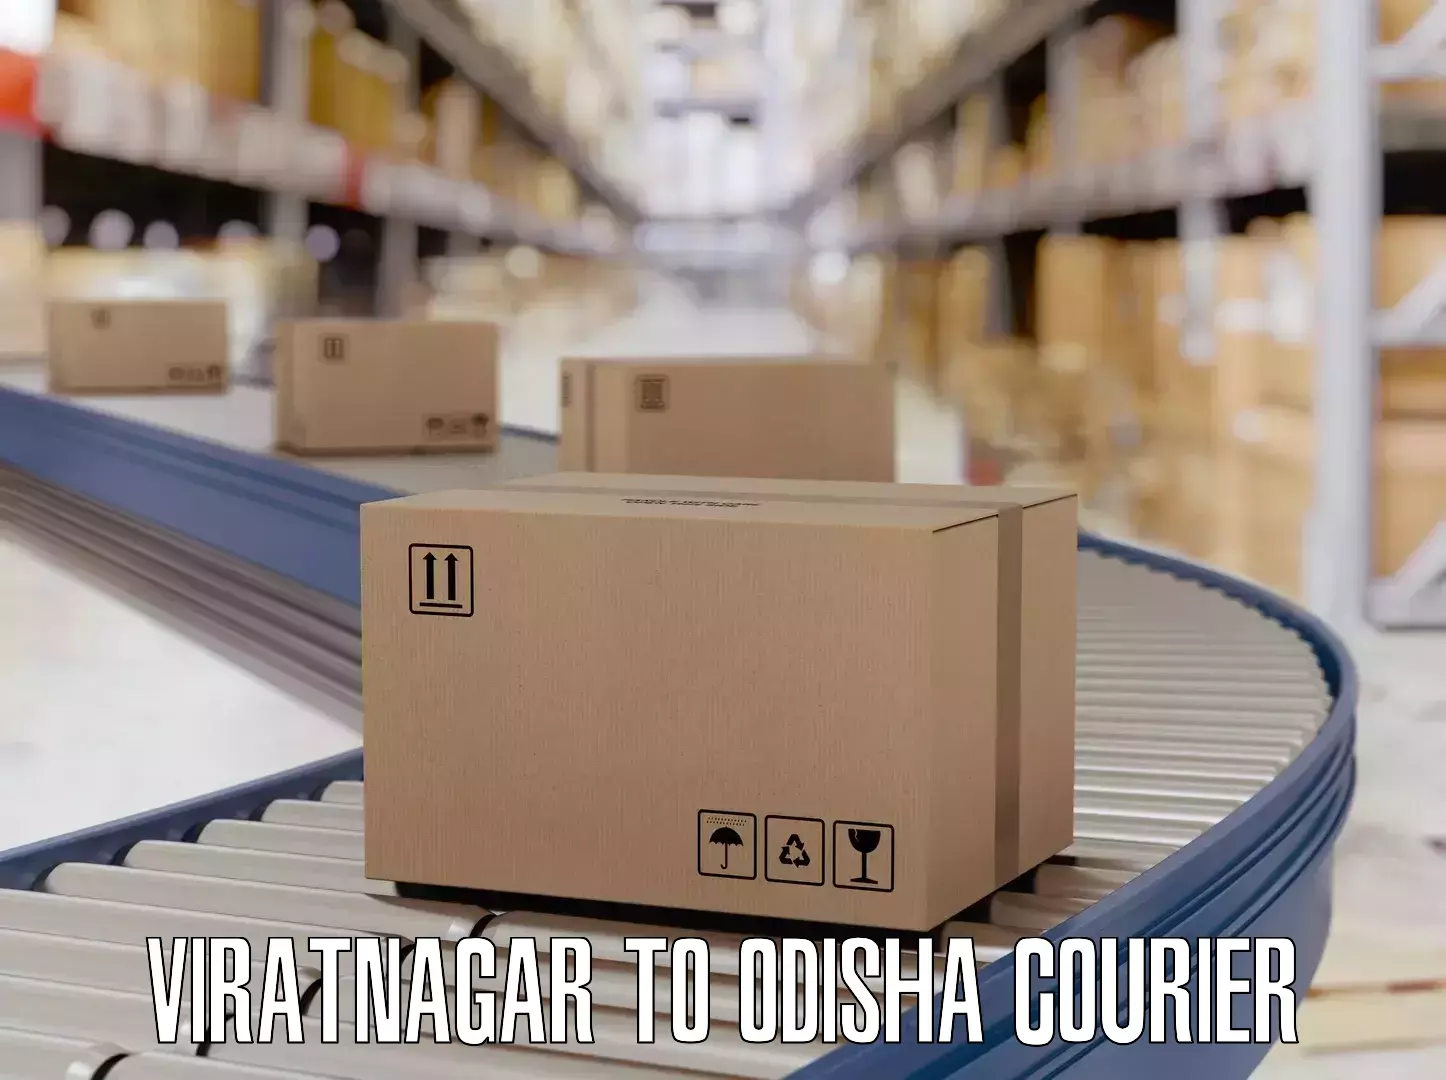 Luggage delivery providers Viratnagar to Rayagada